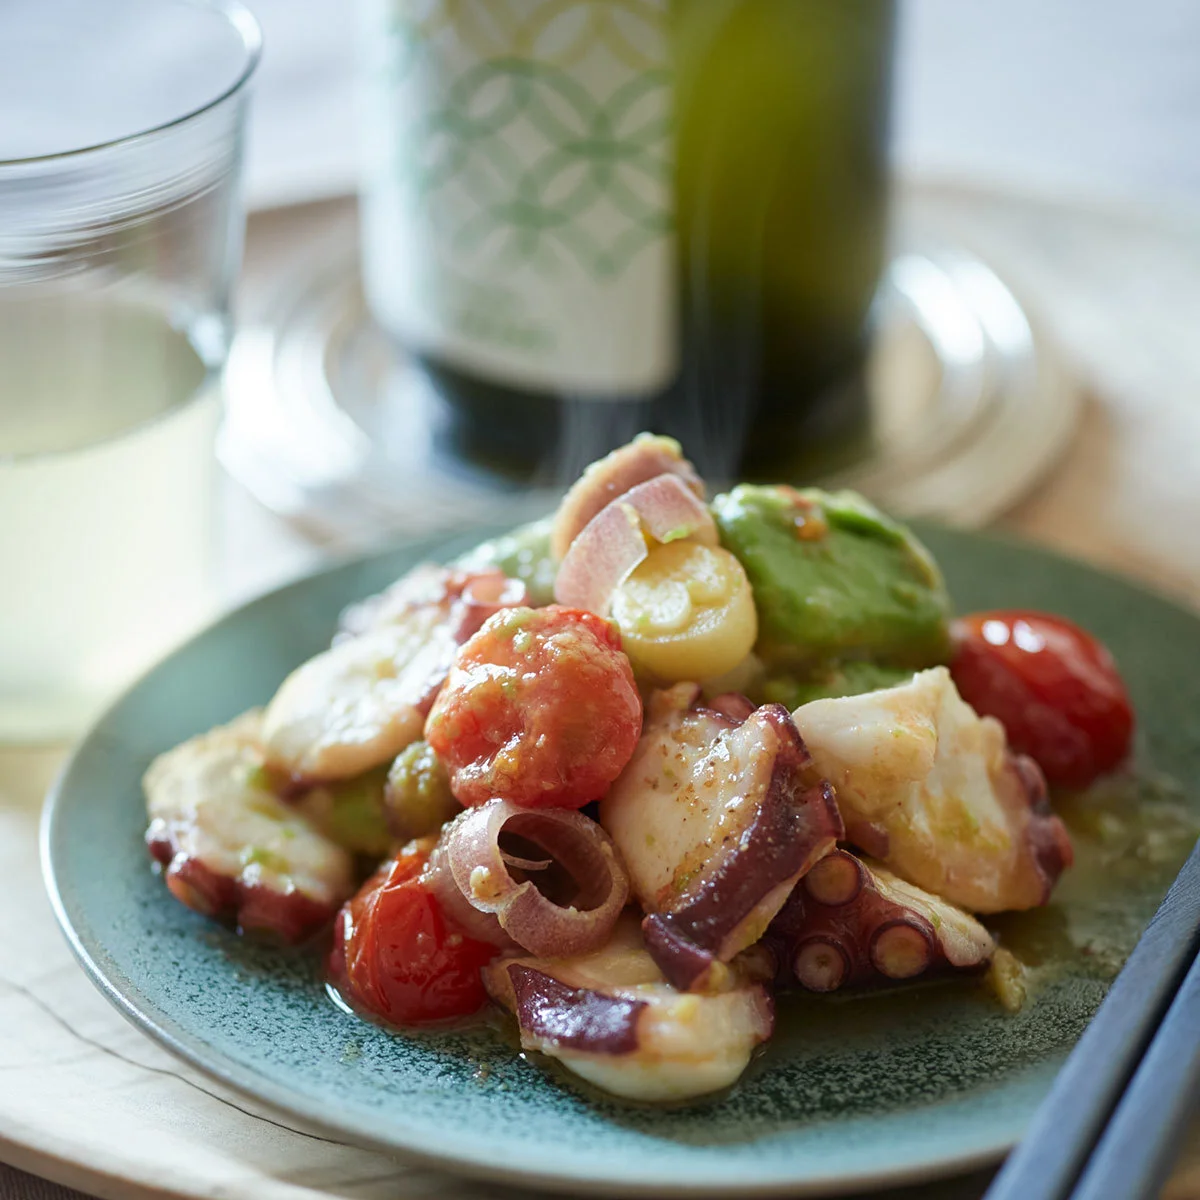 タコのコリっと感とトマトの旨味、アボカドのとろみが一皿に！【平野由希子のおつまみレシピ #54】